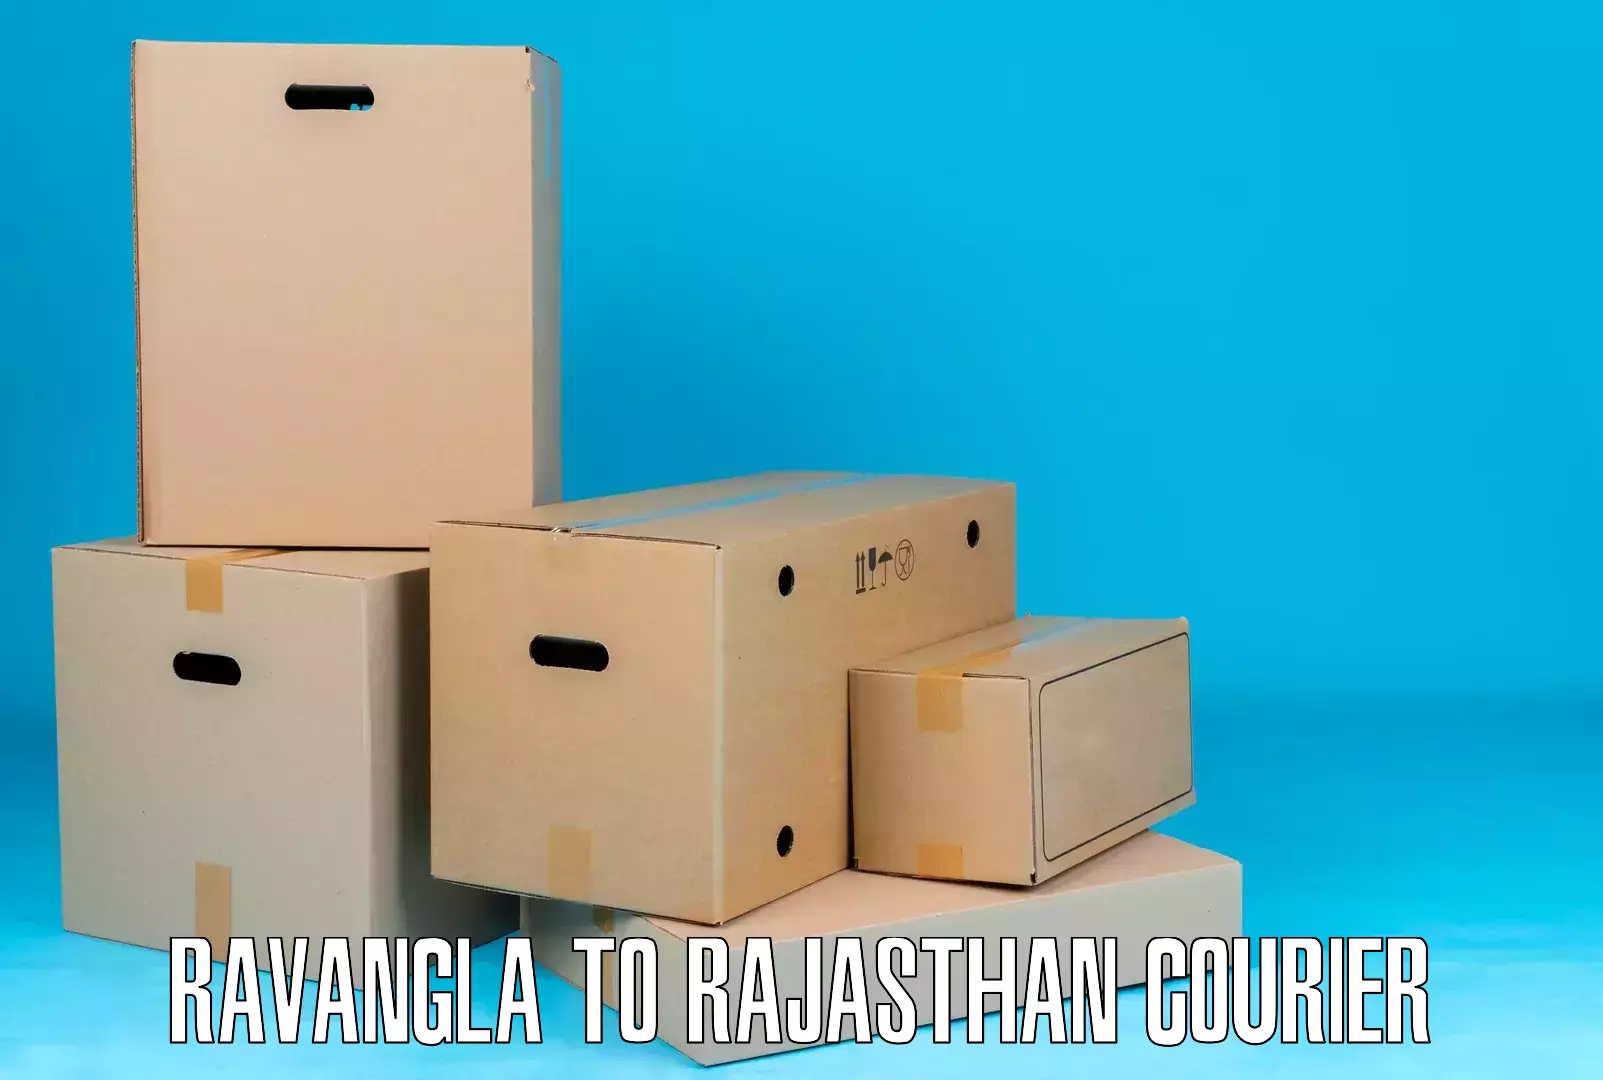 Express package handling Ravangla to Banasthali Vidyapith